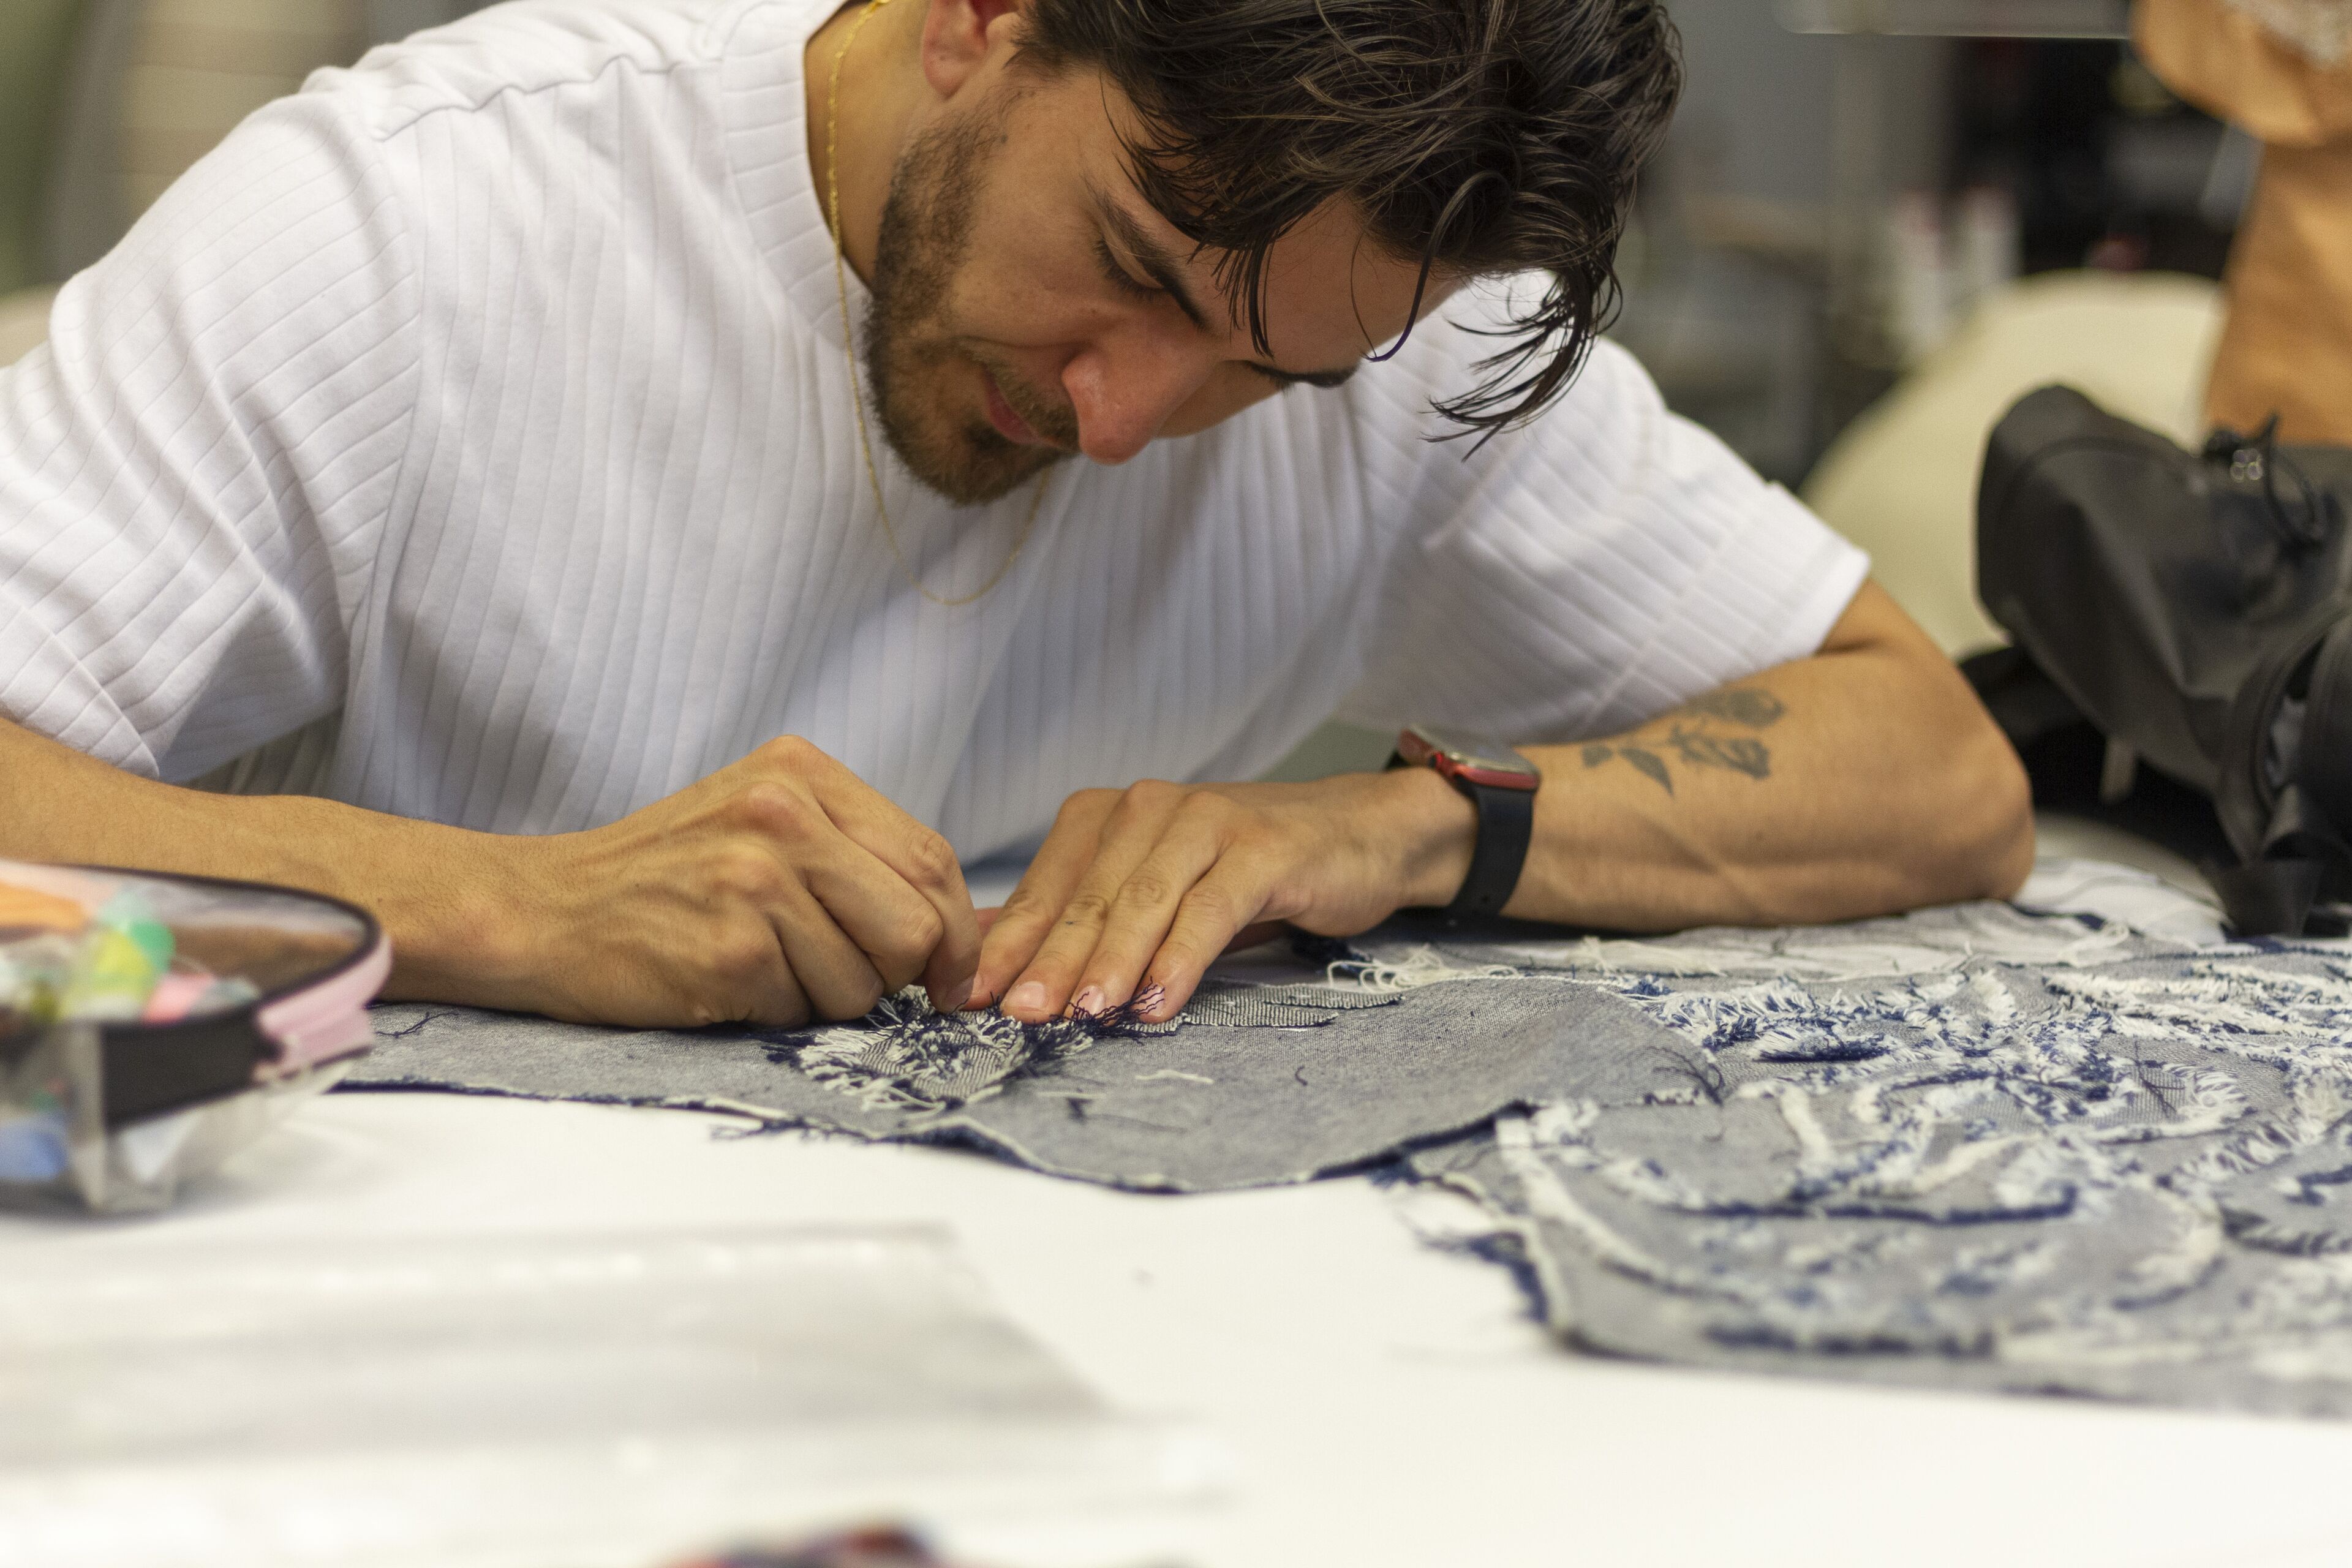 Un artesà meticulós broda amb cura un patró en un tros de teixit, concentrat en la feina delicada.